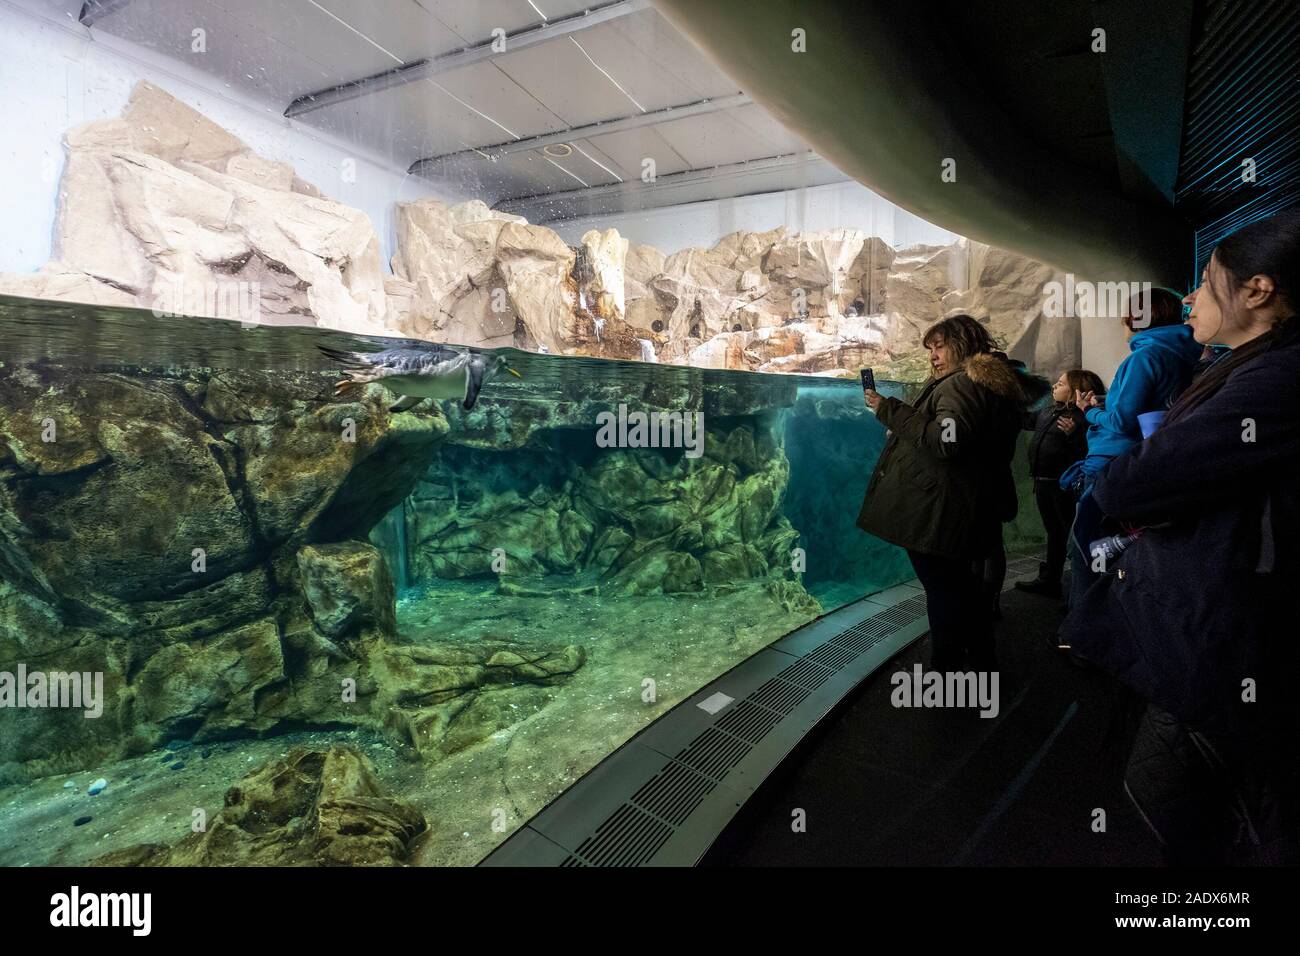 L'Acquario di Genova - Aquarium de Gênes, Genova, Italie, Europe Banque D'Images